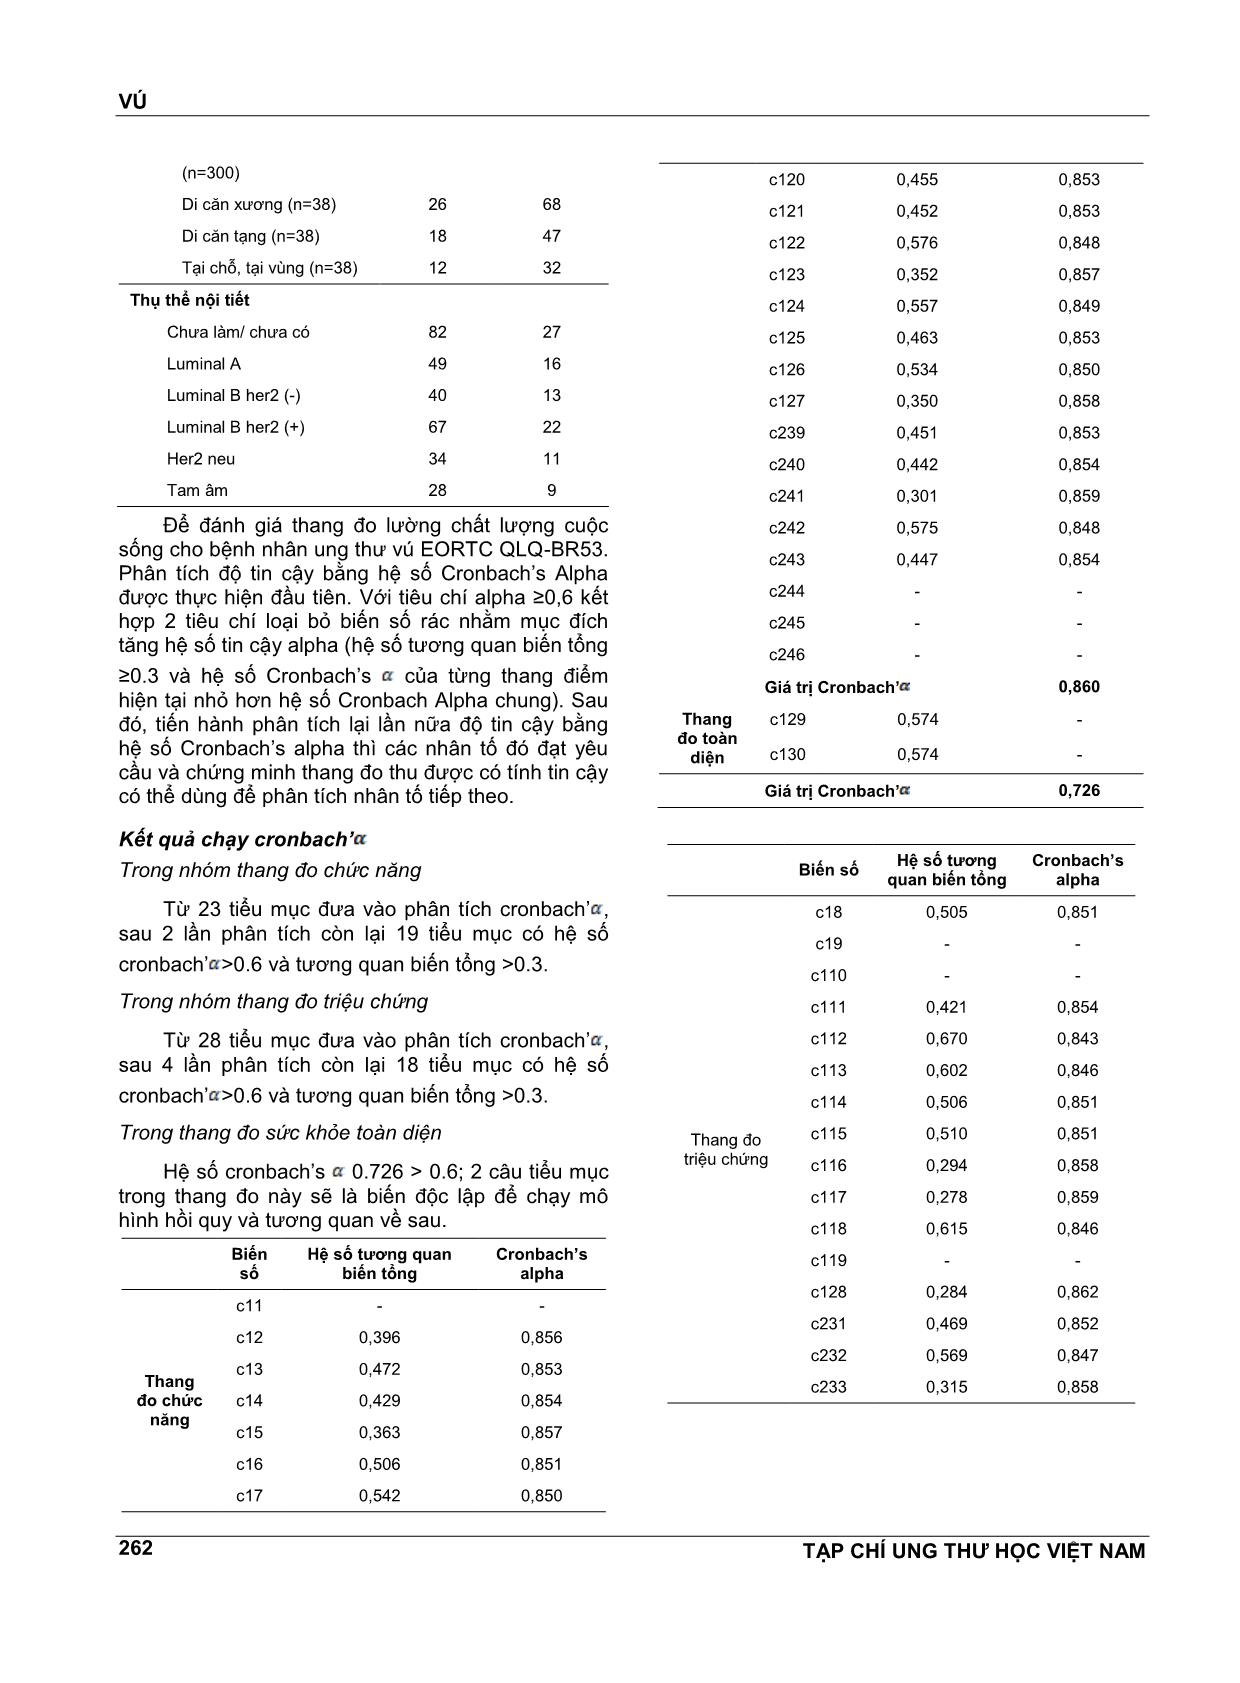 Giá trị của bộ câu hỏi eortc qlq - Br53 để đo lường chất lượng cuộc sống cho bệnh nhân ung thư vú tại bệnh viện ung bướu thành phố Hồ Chí Minh trang 5